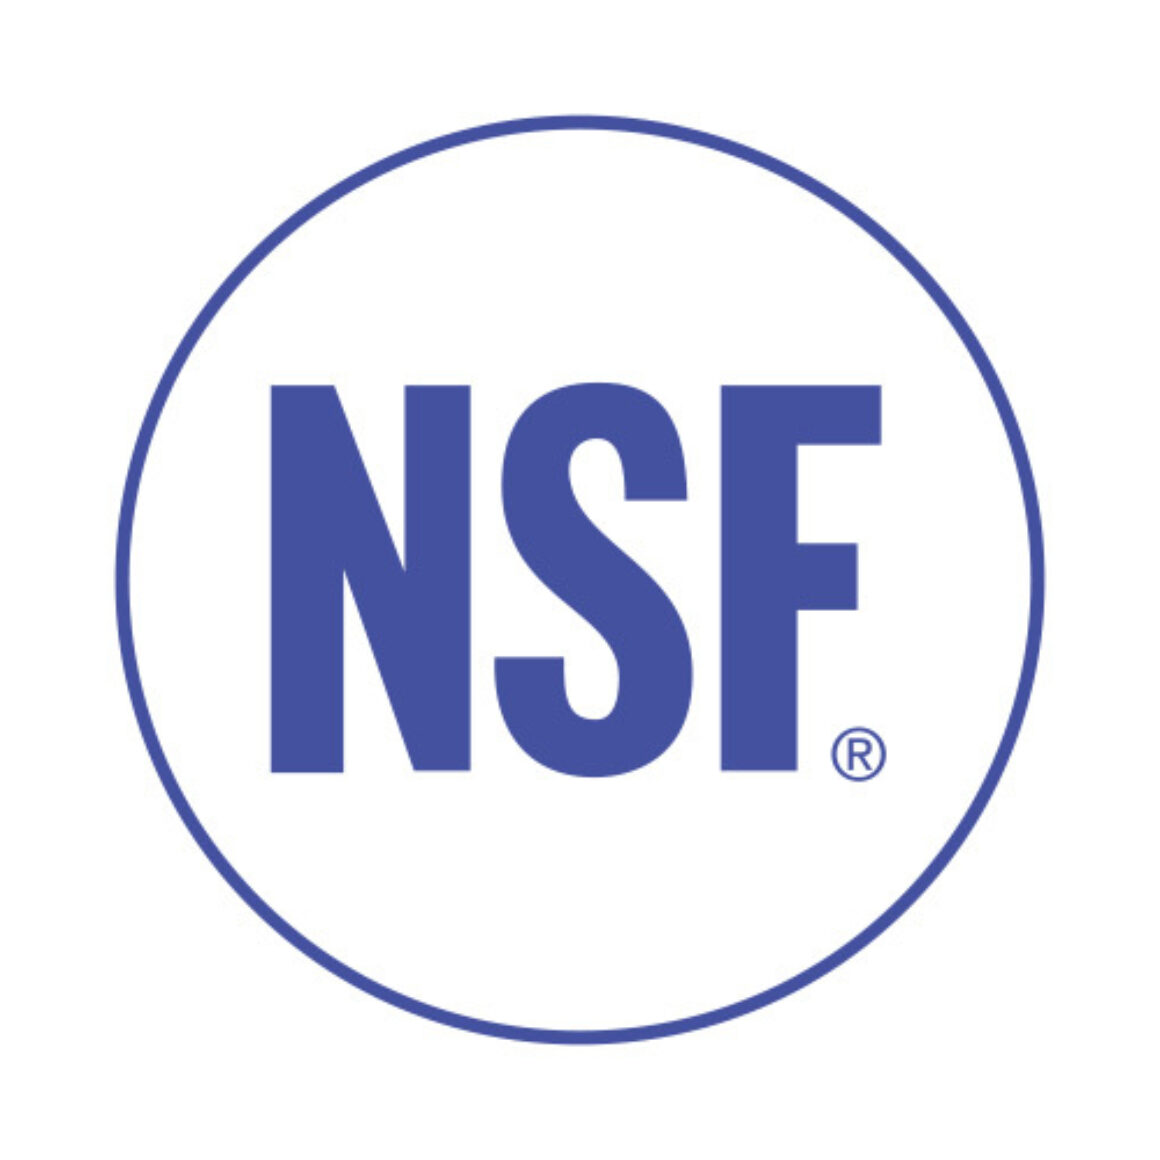 NSF PROSYSTEM GmbH